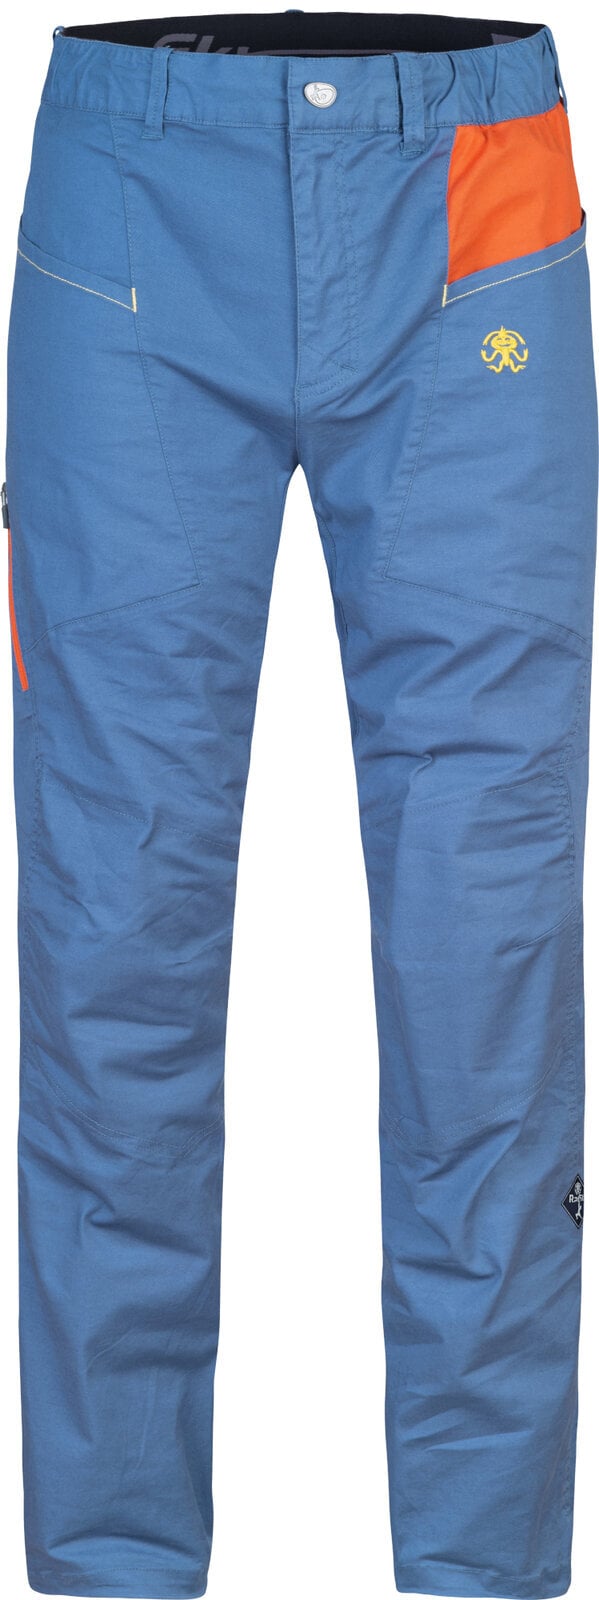 Spodnie outdoorowe Rafiki Crag Man Pants Ensign Blue/Clay L Spodnie outdoorowe